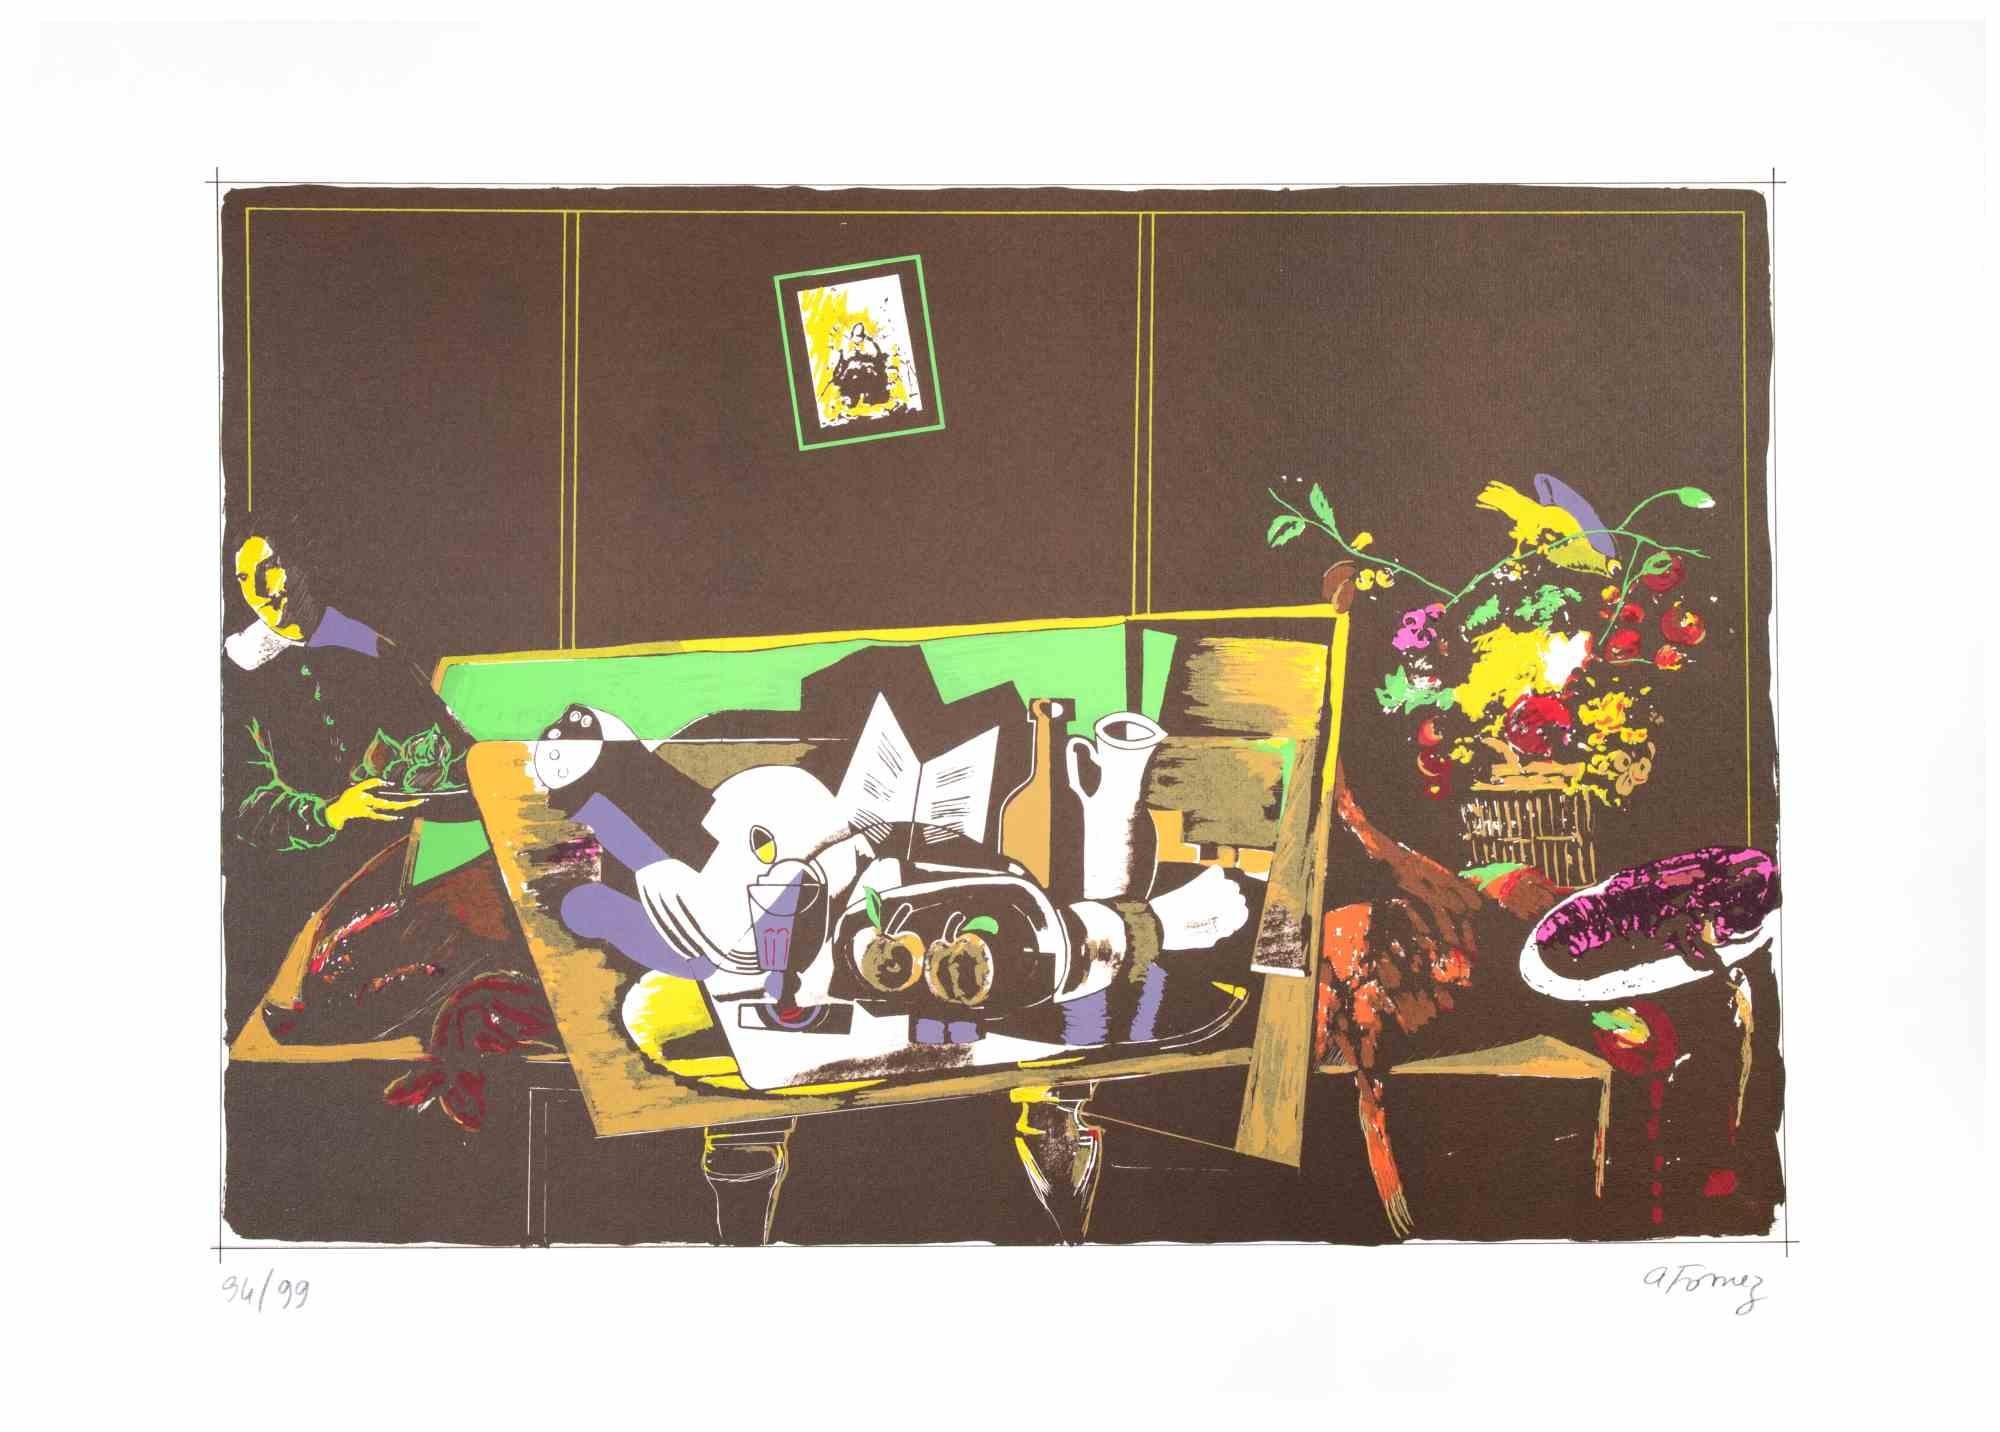 Still Life est une lithographie colorée réalisée par Antonio Fomez dans les années 1970.

Signé à la main au crayon en bas à droite. Numérotée, édition de 99 tirages au crayon en bas à gauche.

Bonnes conditions.

Une nature morte qui rappelle le